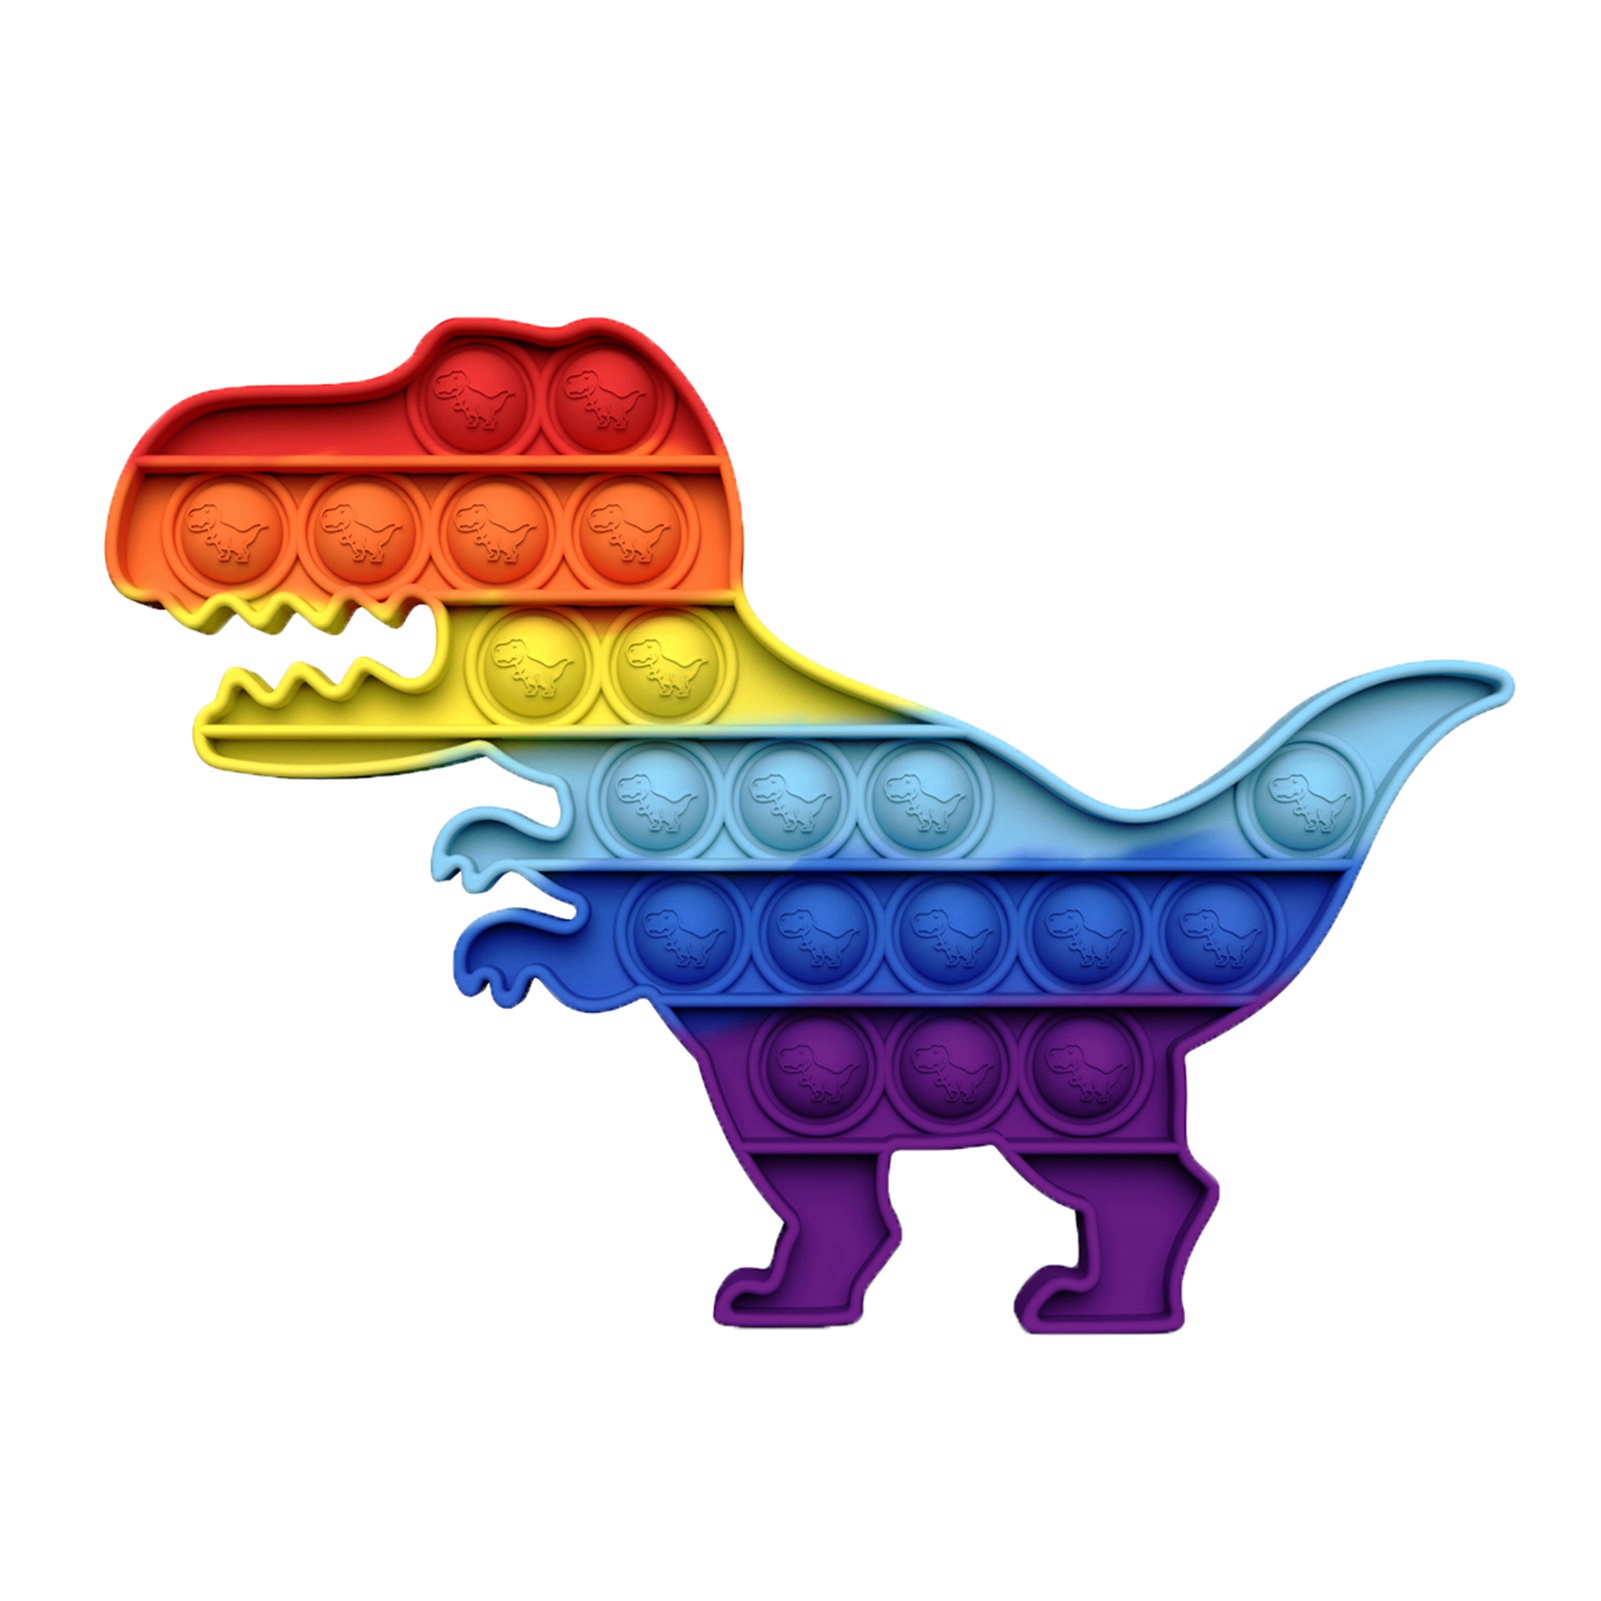 ⭐️ Popits Rainbow Einhorn Dino Popit Pop it Fidget Toy Spielzeug Anti-Stress  ⭐️ 